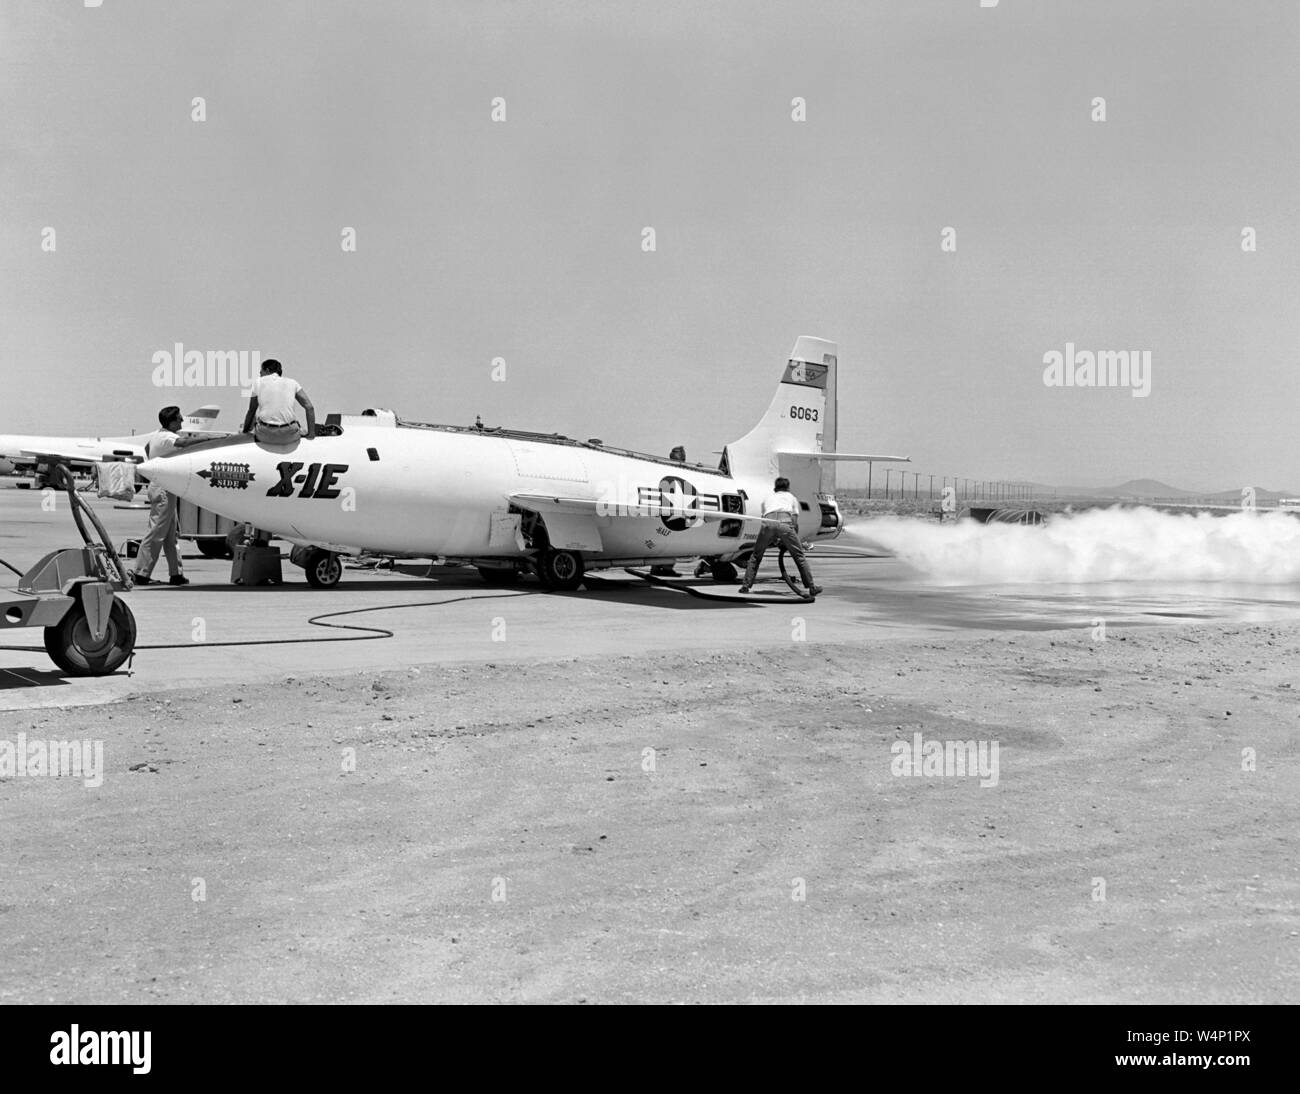 Bell Aircraft Corporation X-1E pendant un essai de fonctionnement du moteur sur le CCNTA High-Speed Flight Station près de la rampe de Rogers Dry Lake, Centre de recherche en vol de la NASA, Edwards, Californie, 6 février 1956. Droit avec la permission de la National Aeronautics and Space Administration (NASA). () Banque D'Images